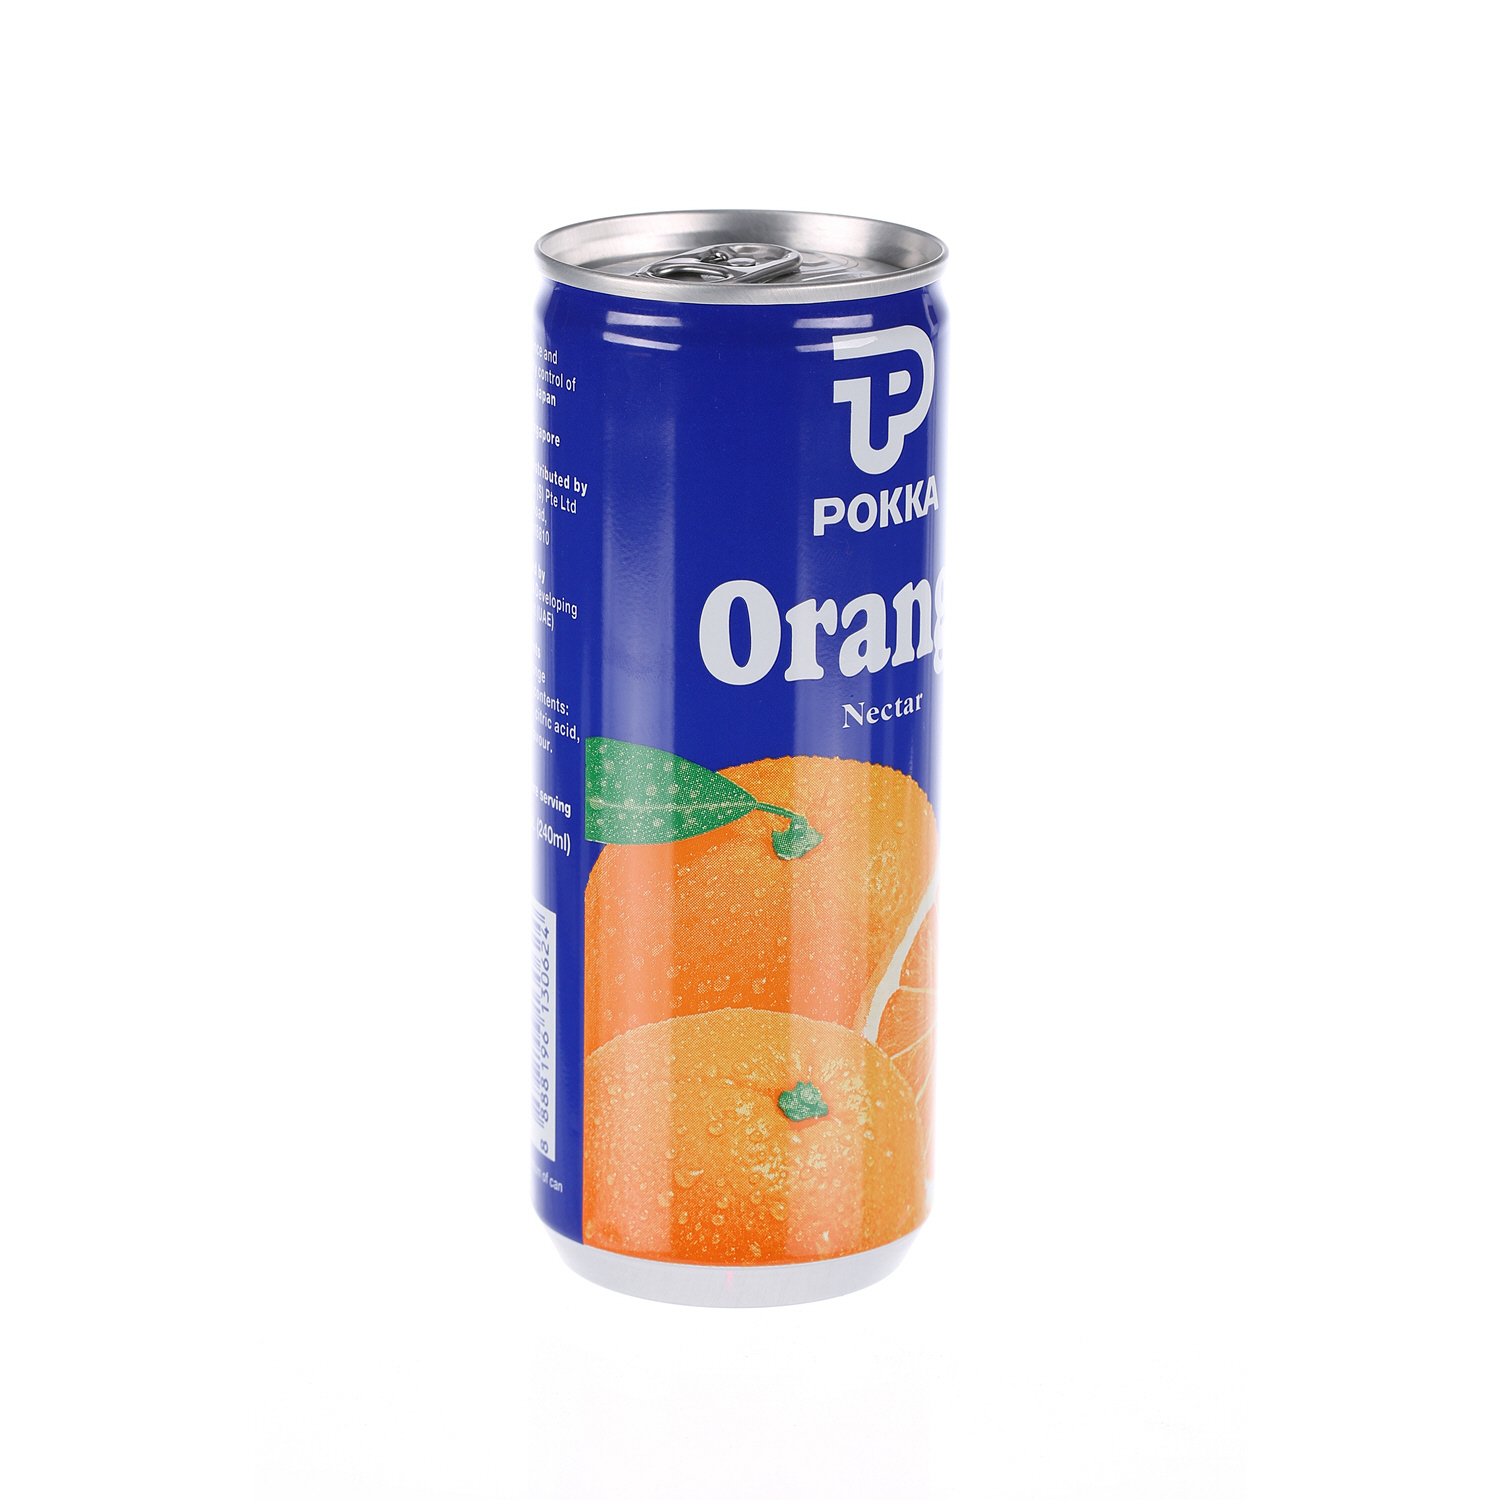 Pokka Orange Nectar Juice 240 ml